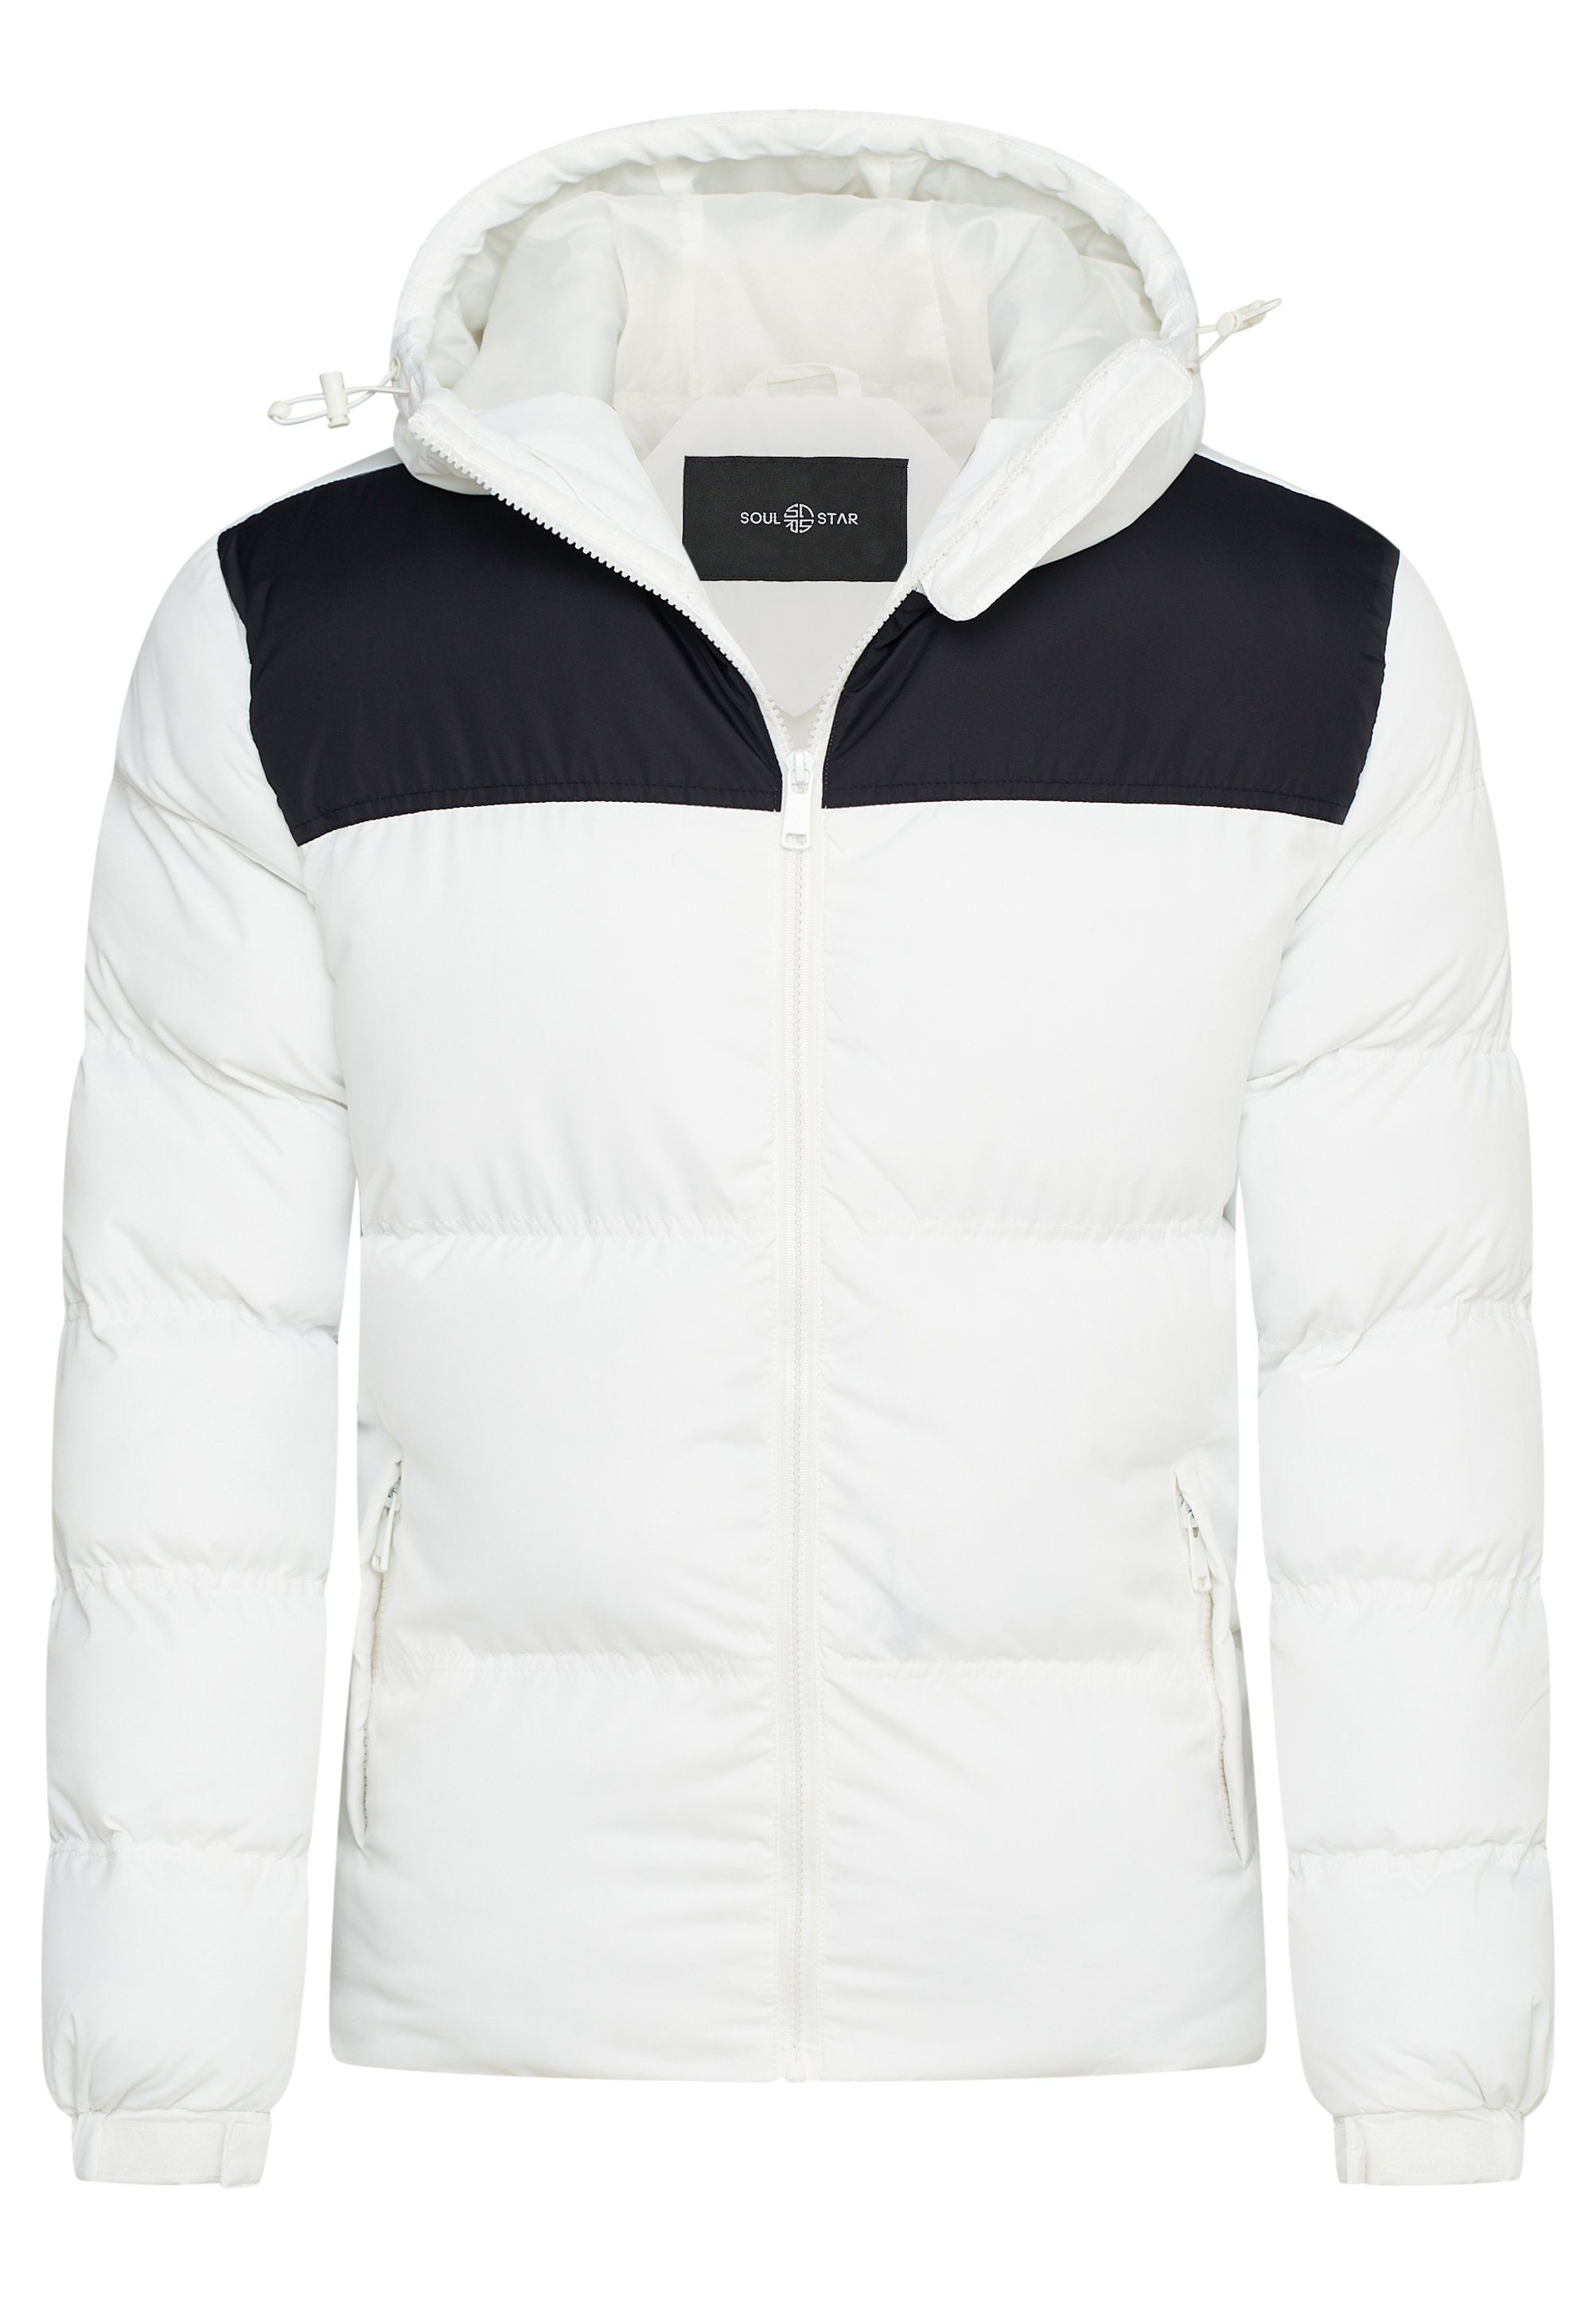 SOULSTAR Winterjacke S2KRAGERO Puffer Jacke mit Kapuze warme Steppjacke Panel-Weiß